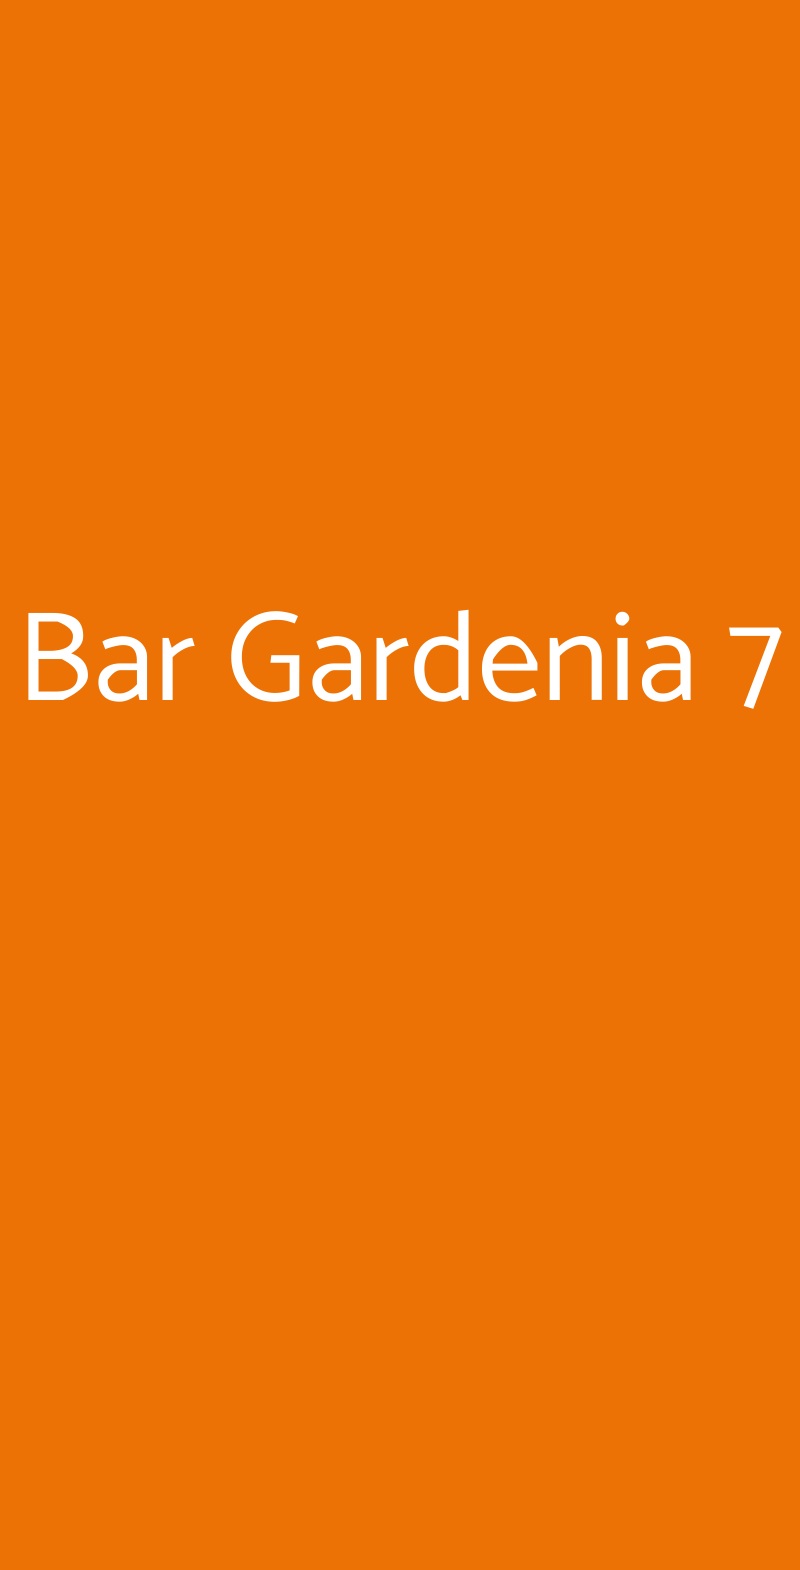 Bar Gardenia 7 Bologna menù 1 pagina